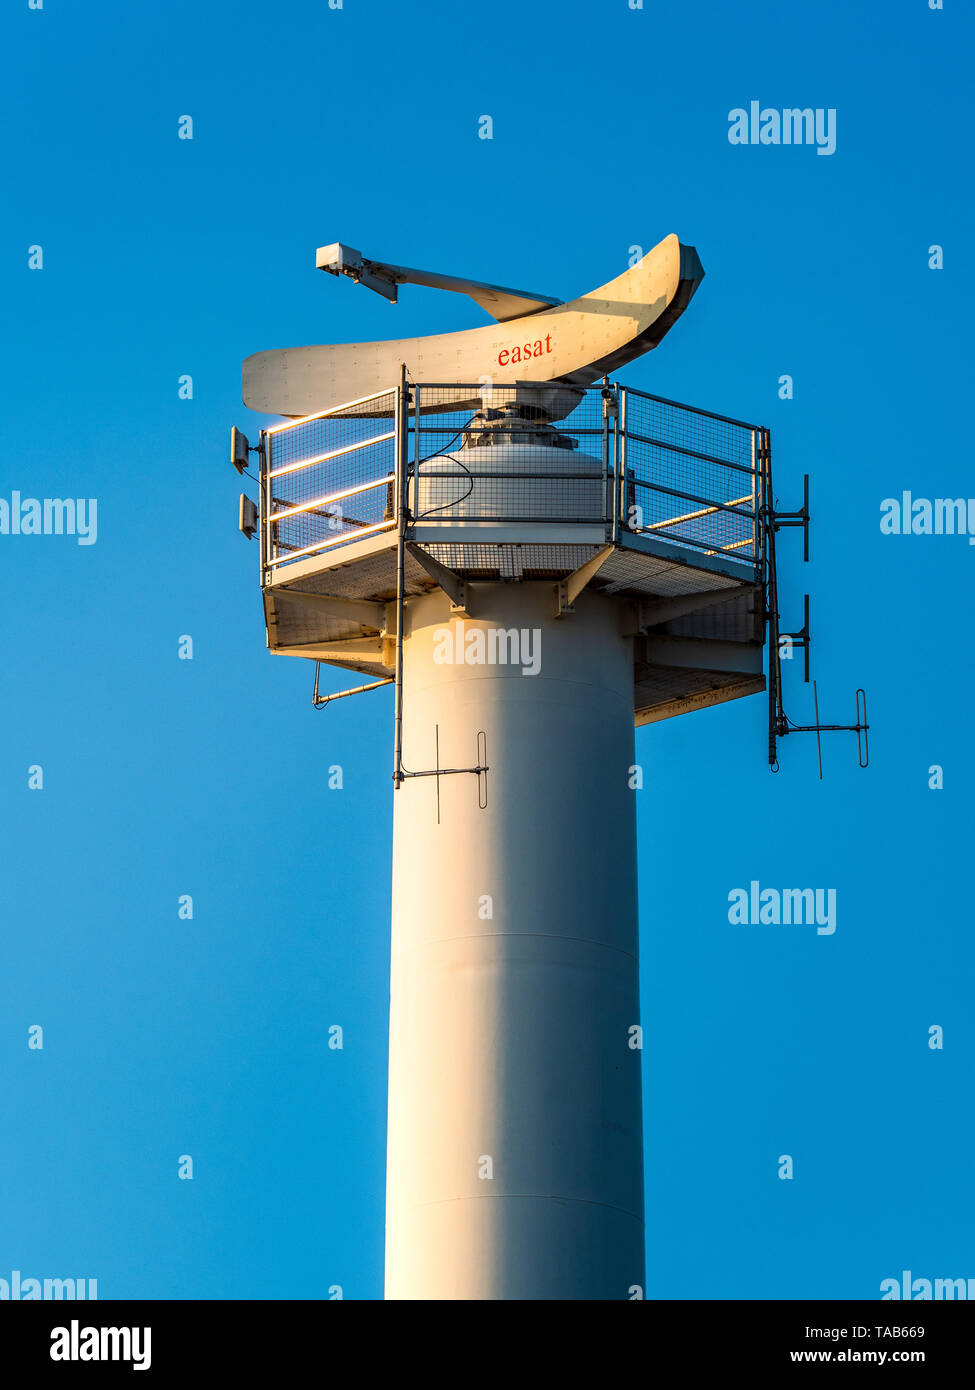 Die Easat Marine Radar Teller am Eingang zum Hafen von Felixstowe in Suffolk, Großbritannien. Felixstowe ist die UKs der Containerschifffahrt Port. Stockfoto